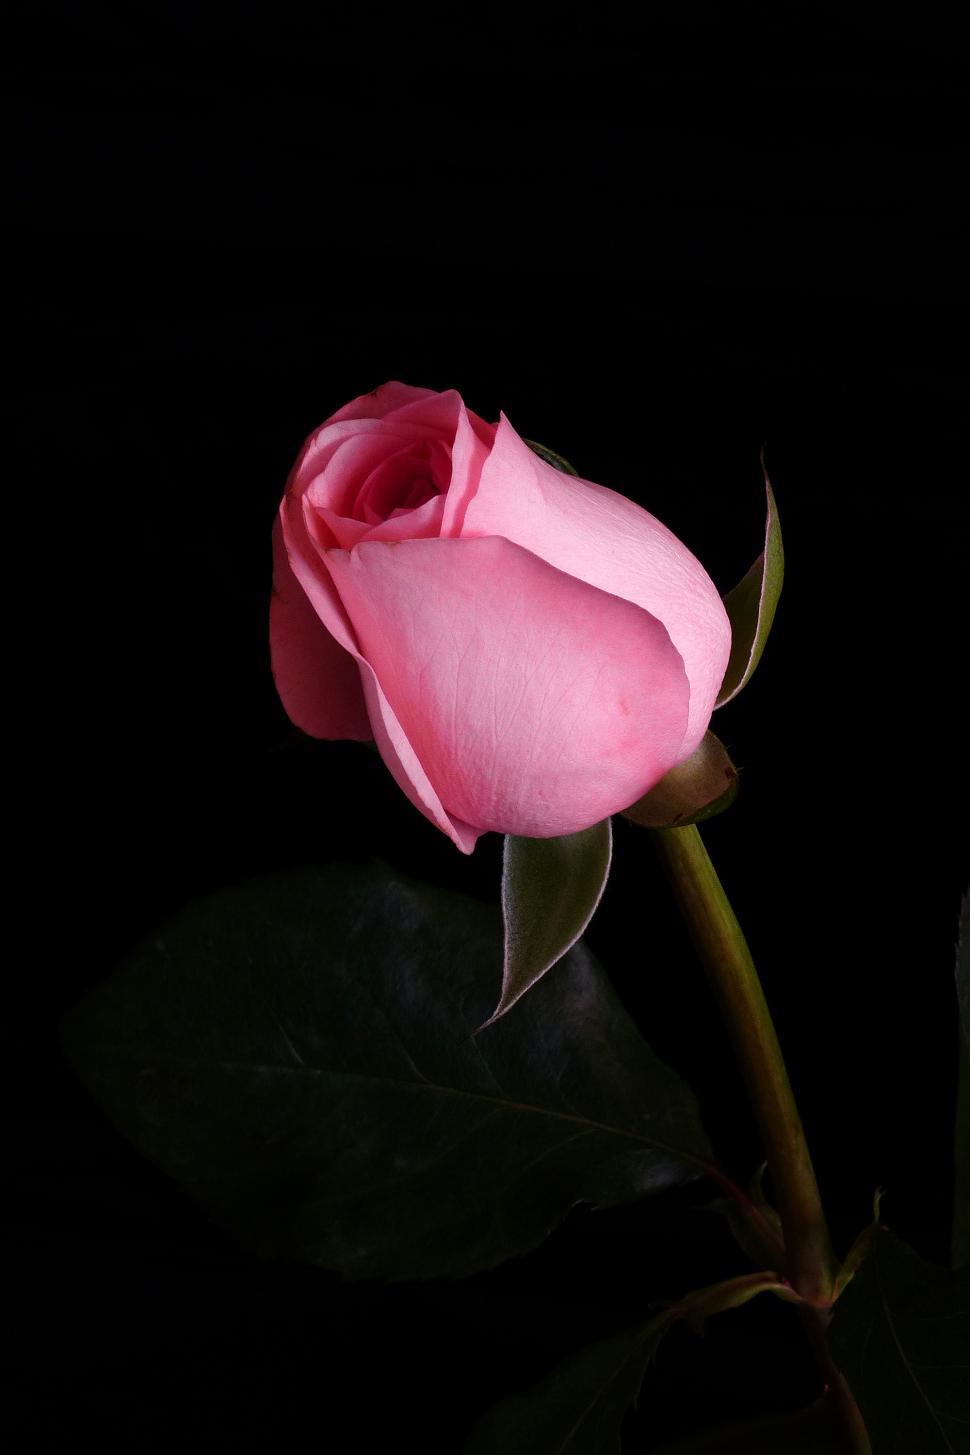 Free Image of Pink Rose Flower 